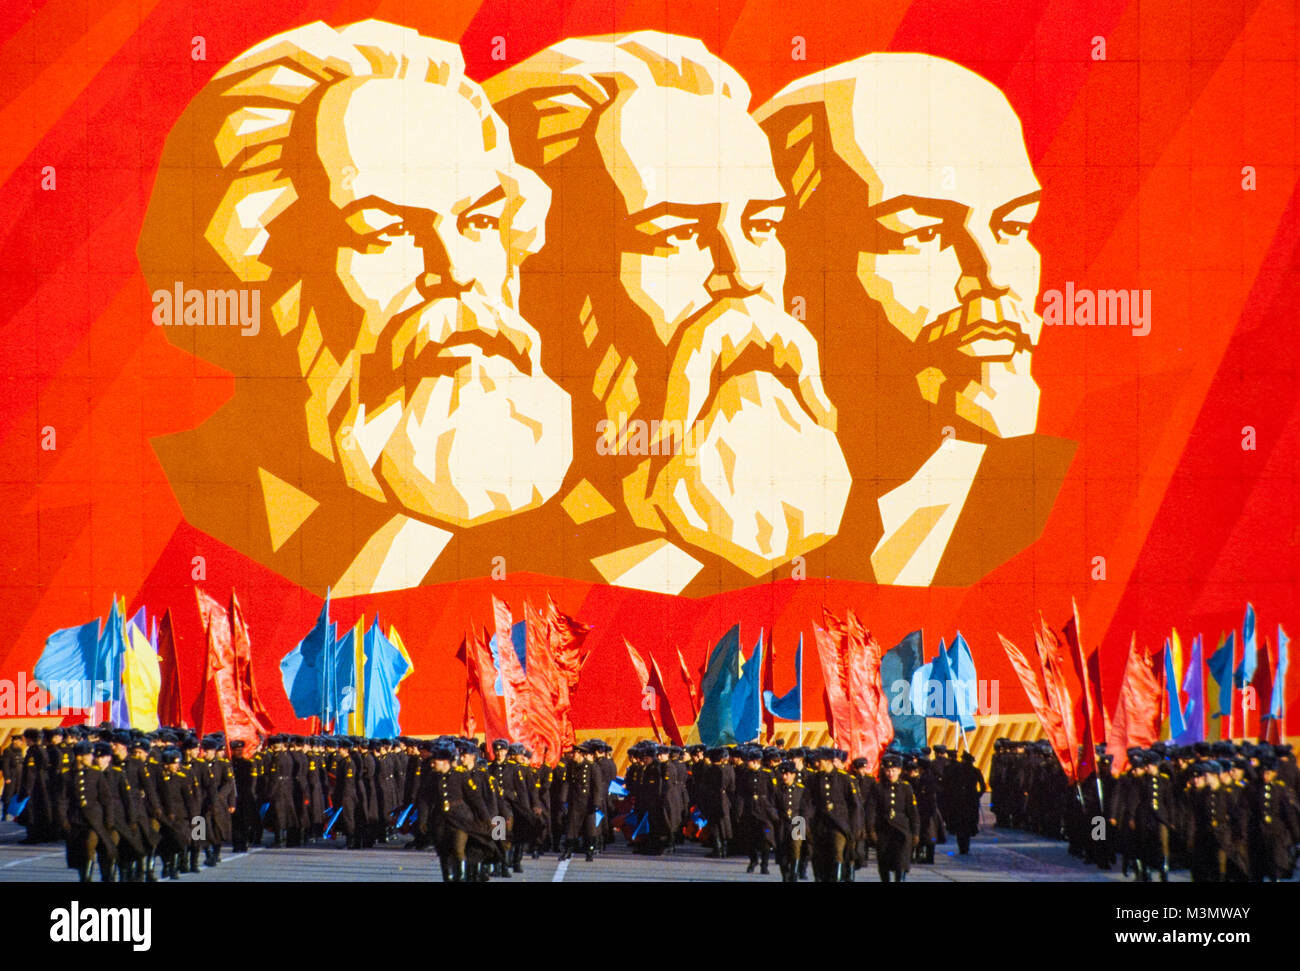 Russische Soldaten üben für eine Parade unter einem Gemälde von Lenin, Engels und Marx in St. Petersburg, Russland. Stockfoto